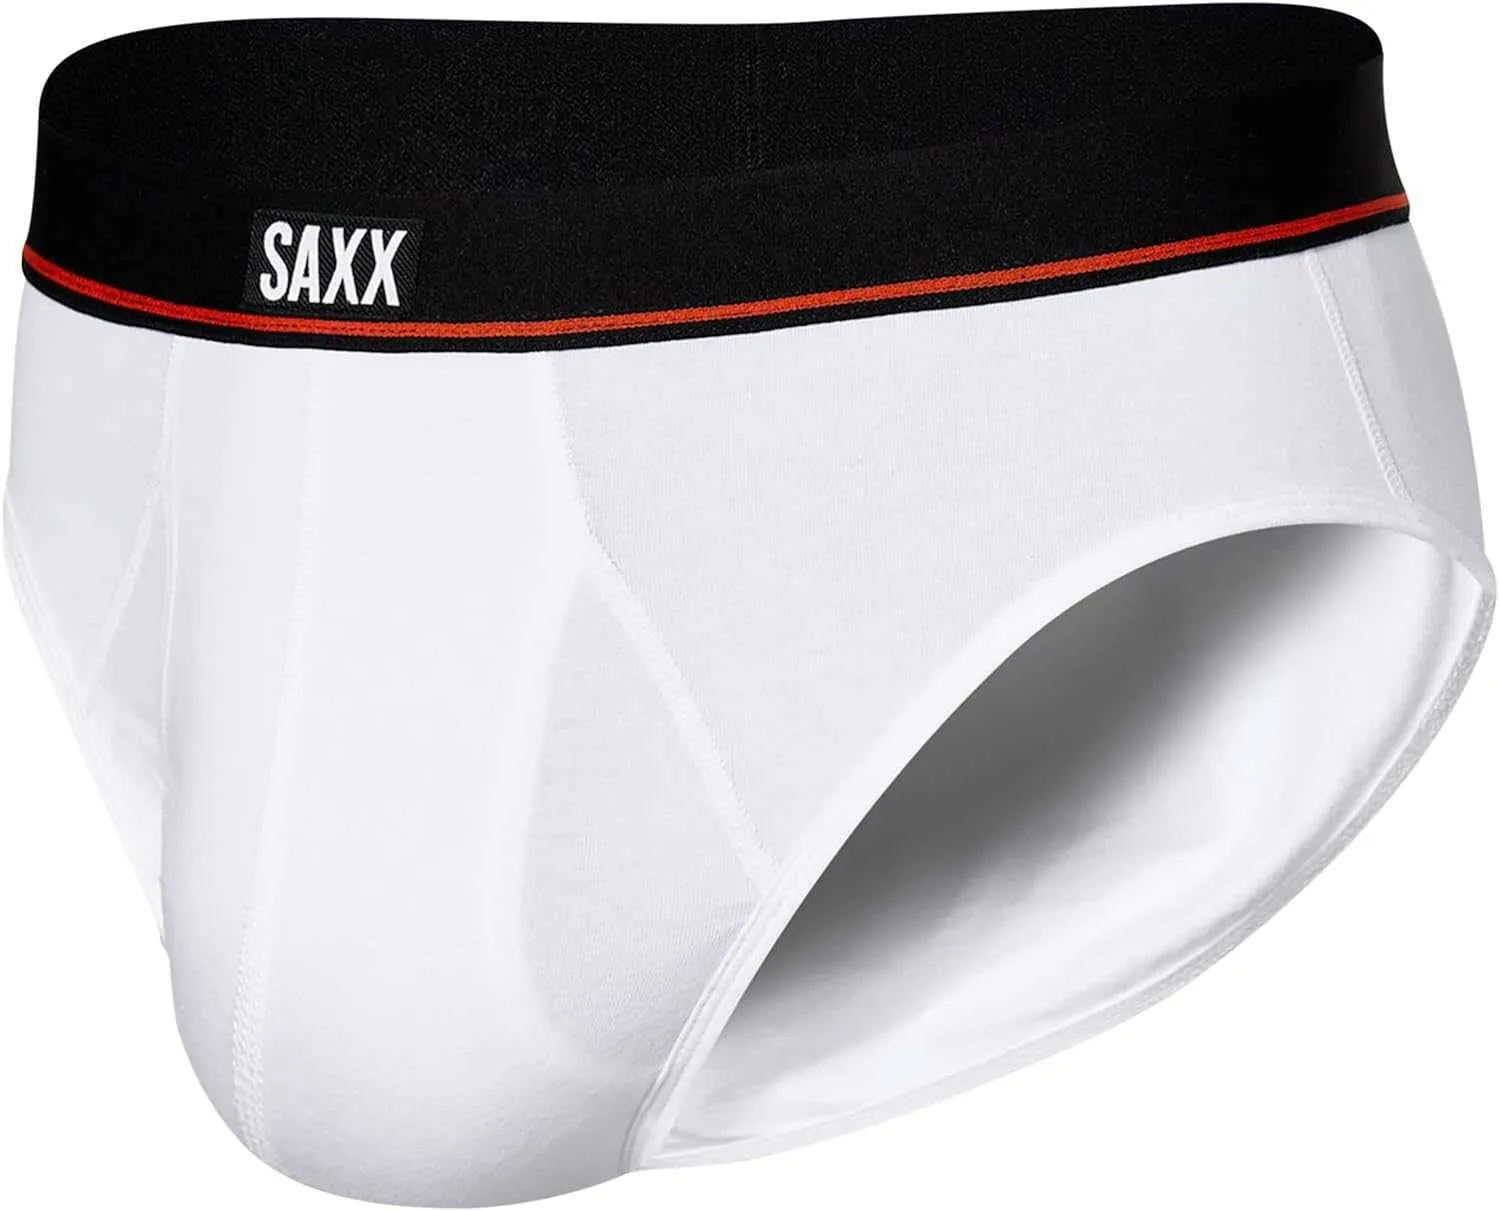 Saxx Erkek iç çamaşırı-kesintisiz elastik pamuk iç çamaşırı yerleşik çanta ve sinek erkek iç çamaşırı